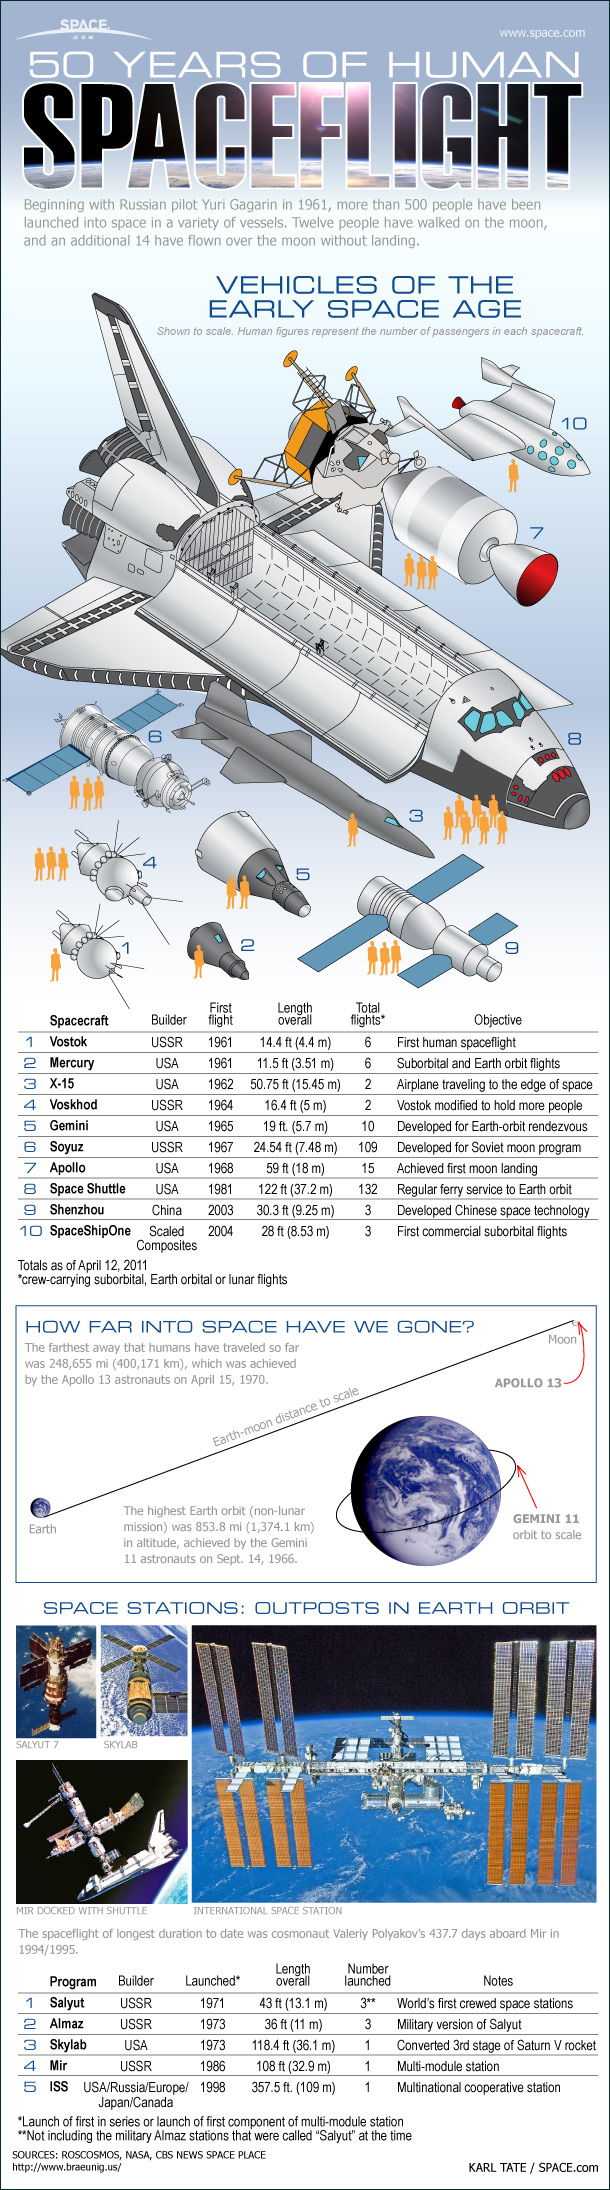 human-spaceflight-50-years-infographic-110411b-02.jpg